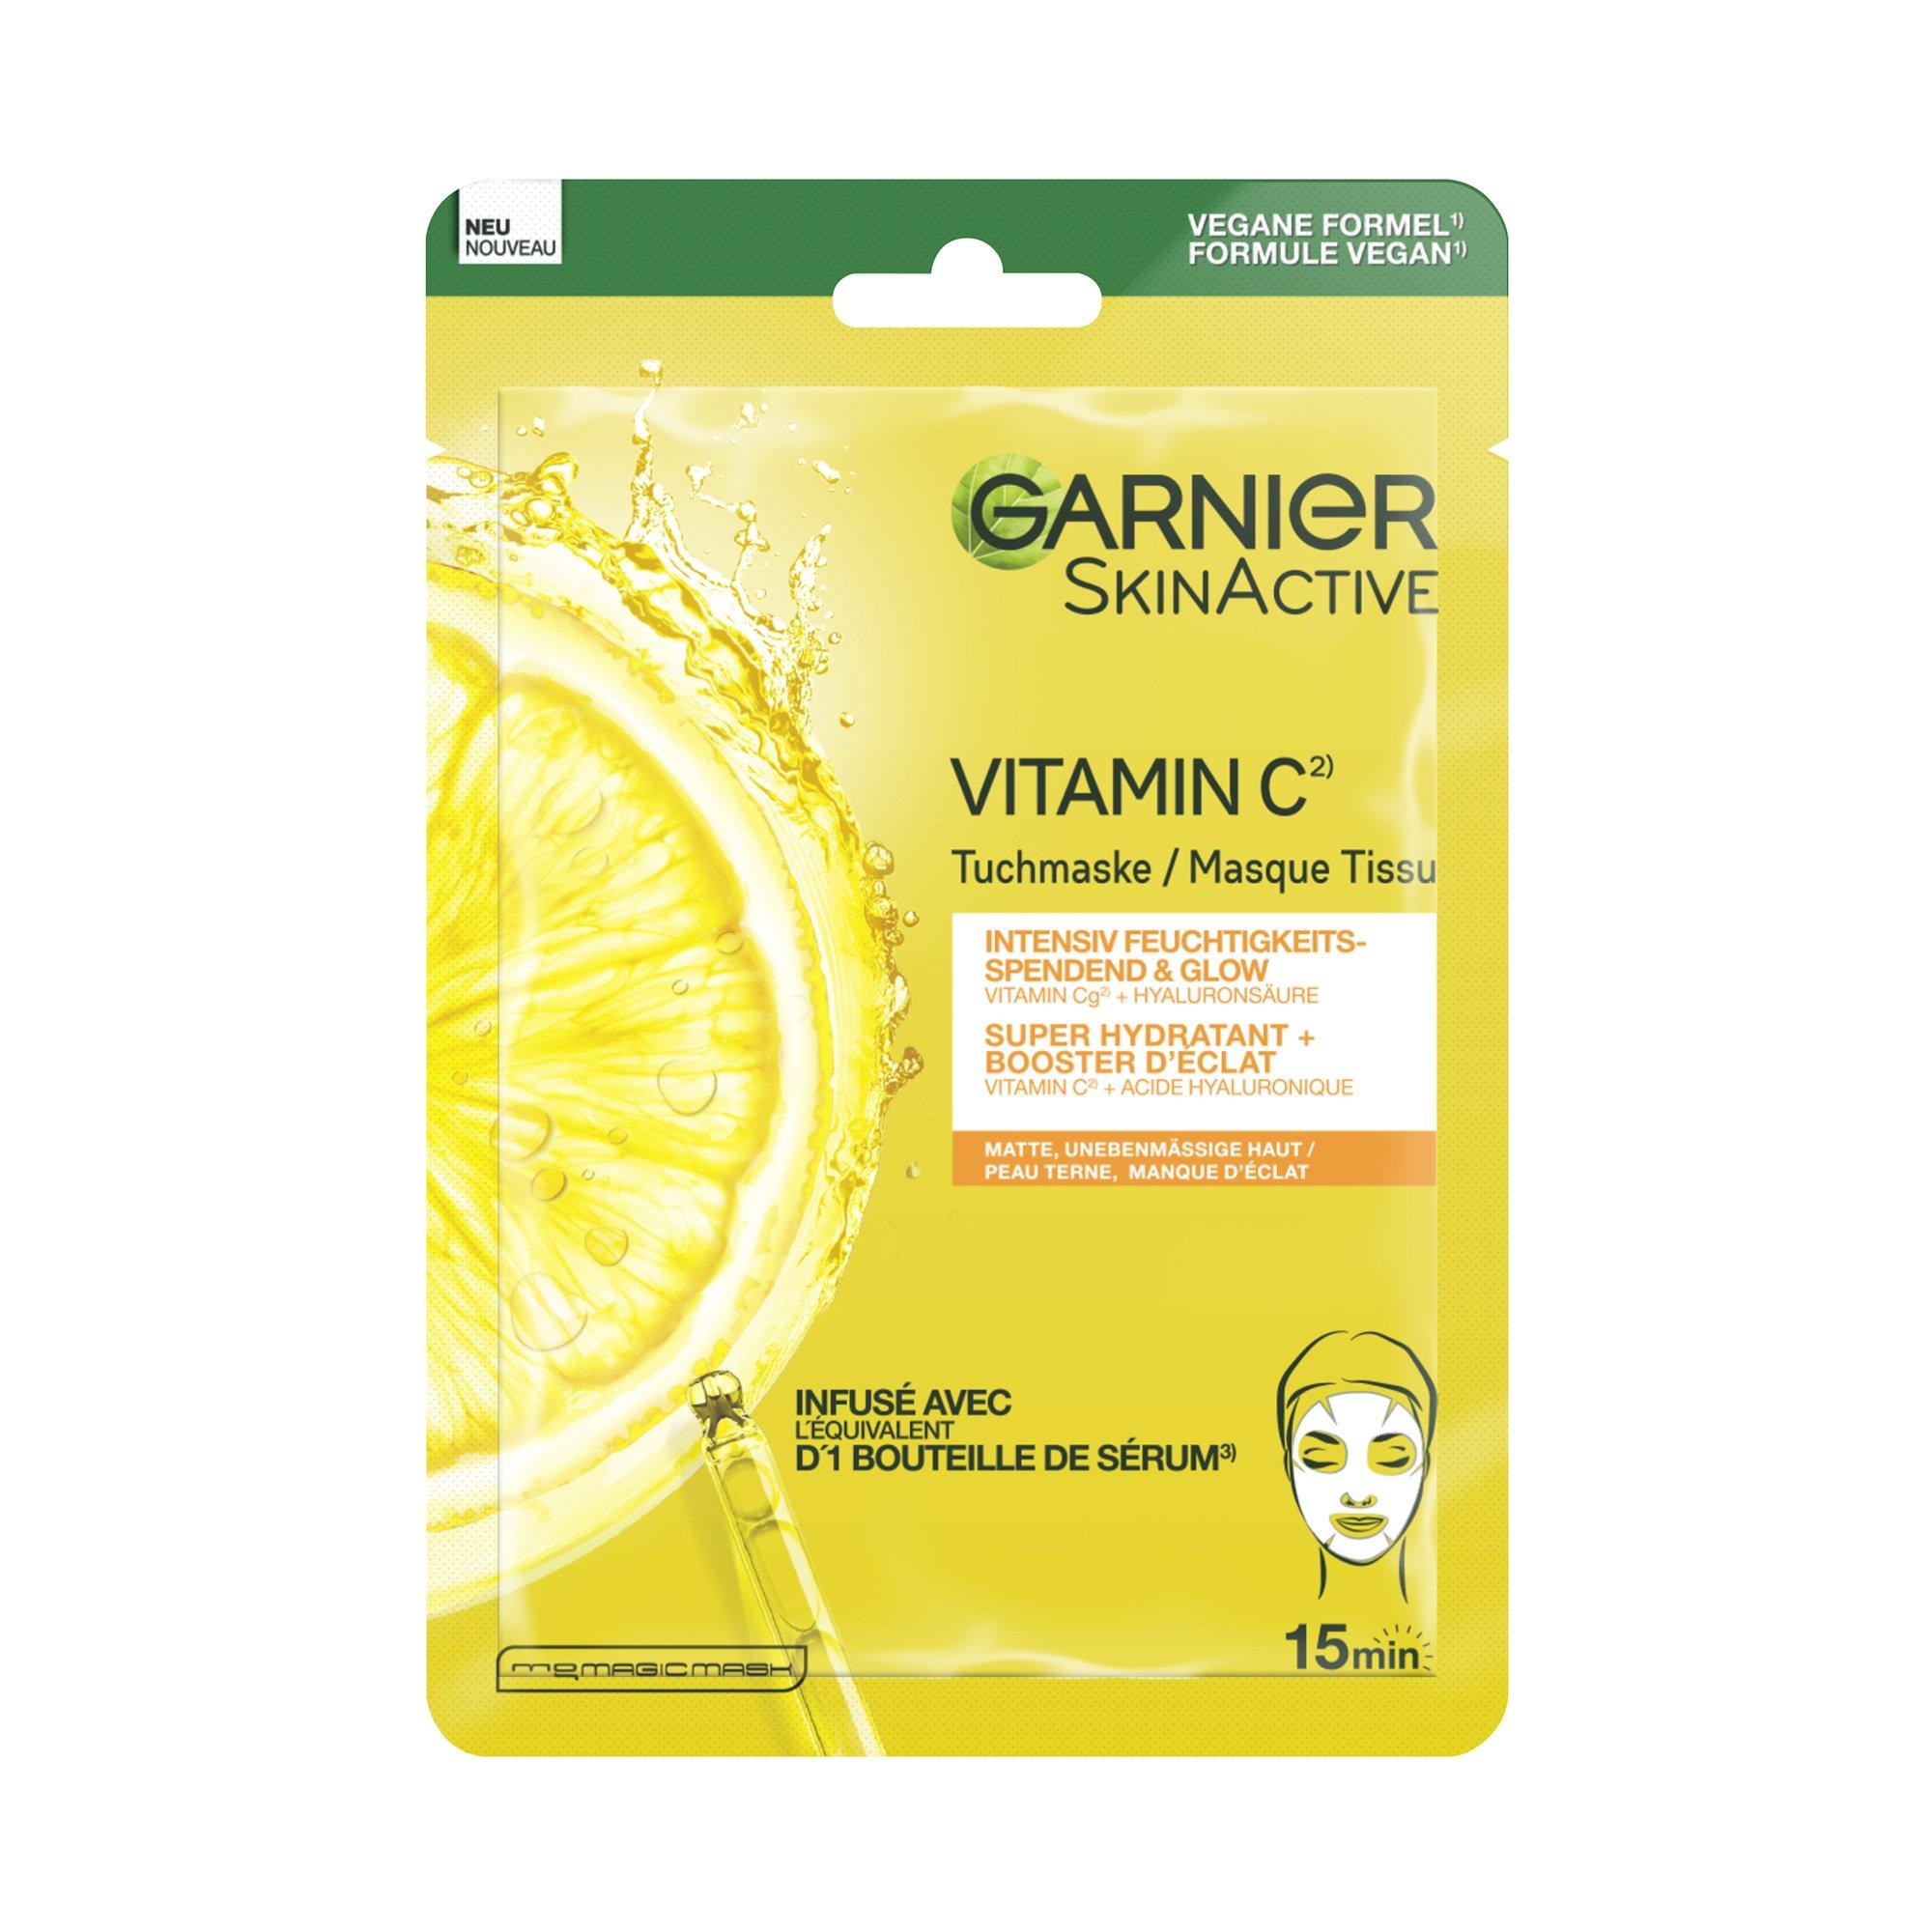 GARNIER SKIN ACTIVE GAR TISSUE MASK VITAMINC SA28GR 140 Vitamin C* Intensiv feuchtigkeitsspendende & Glow Tuchmaske 